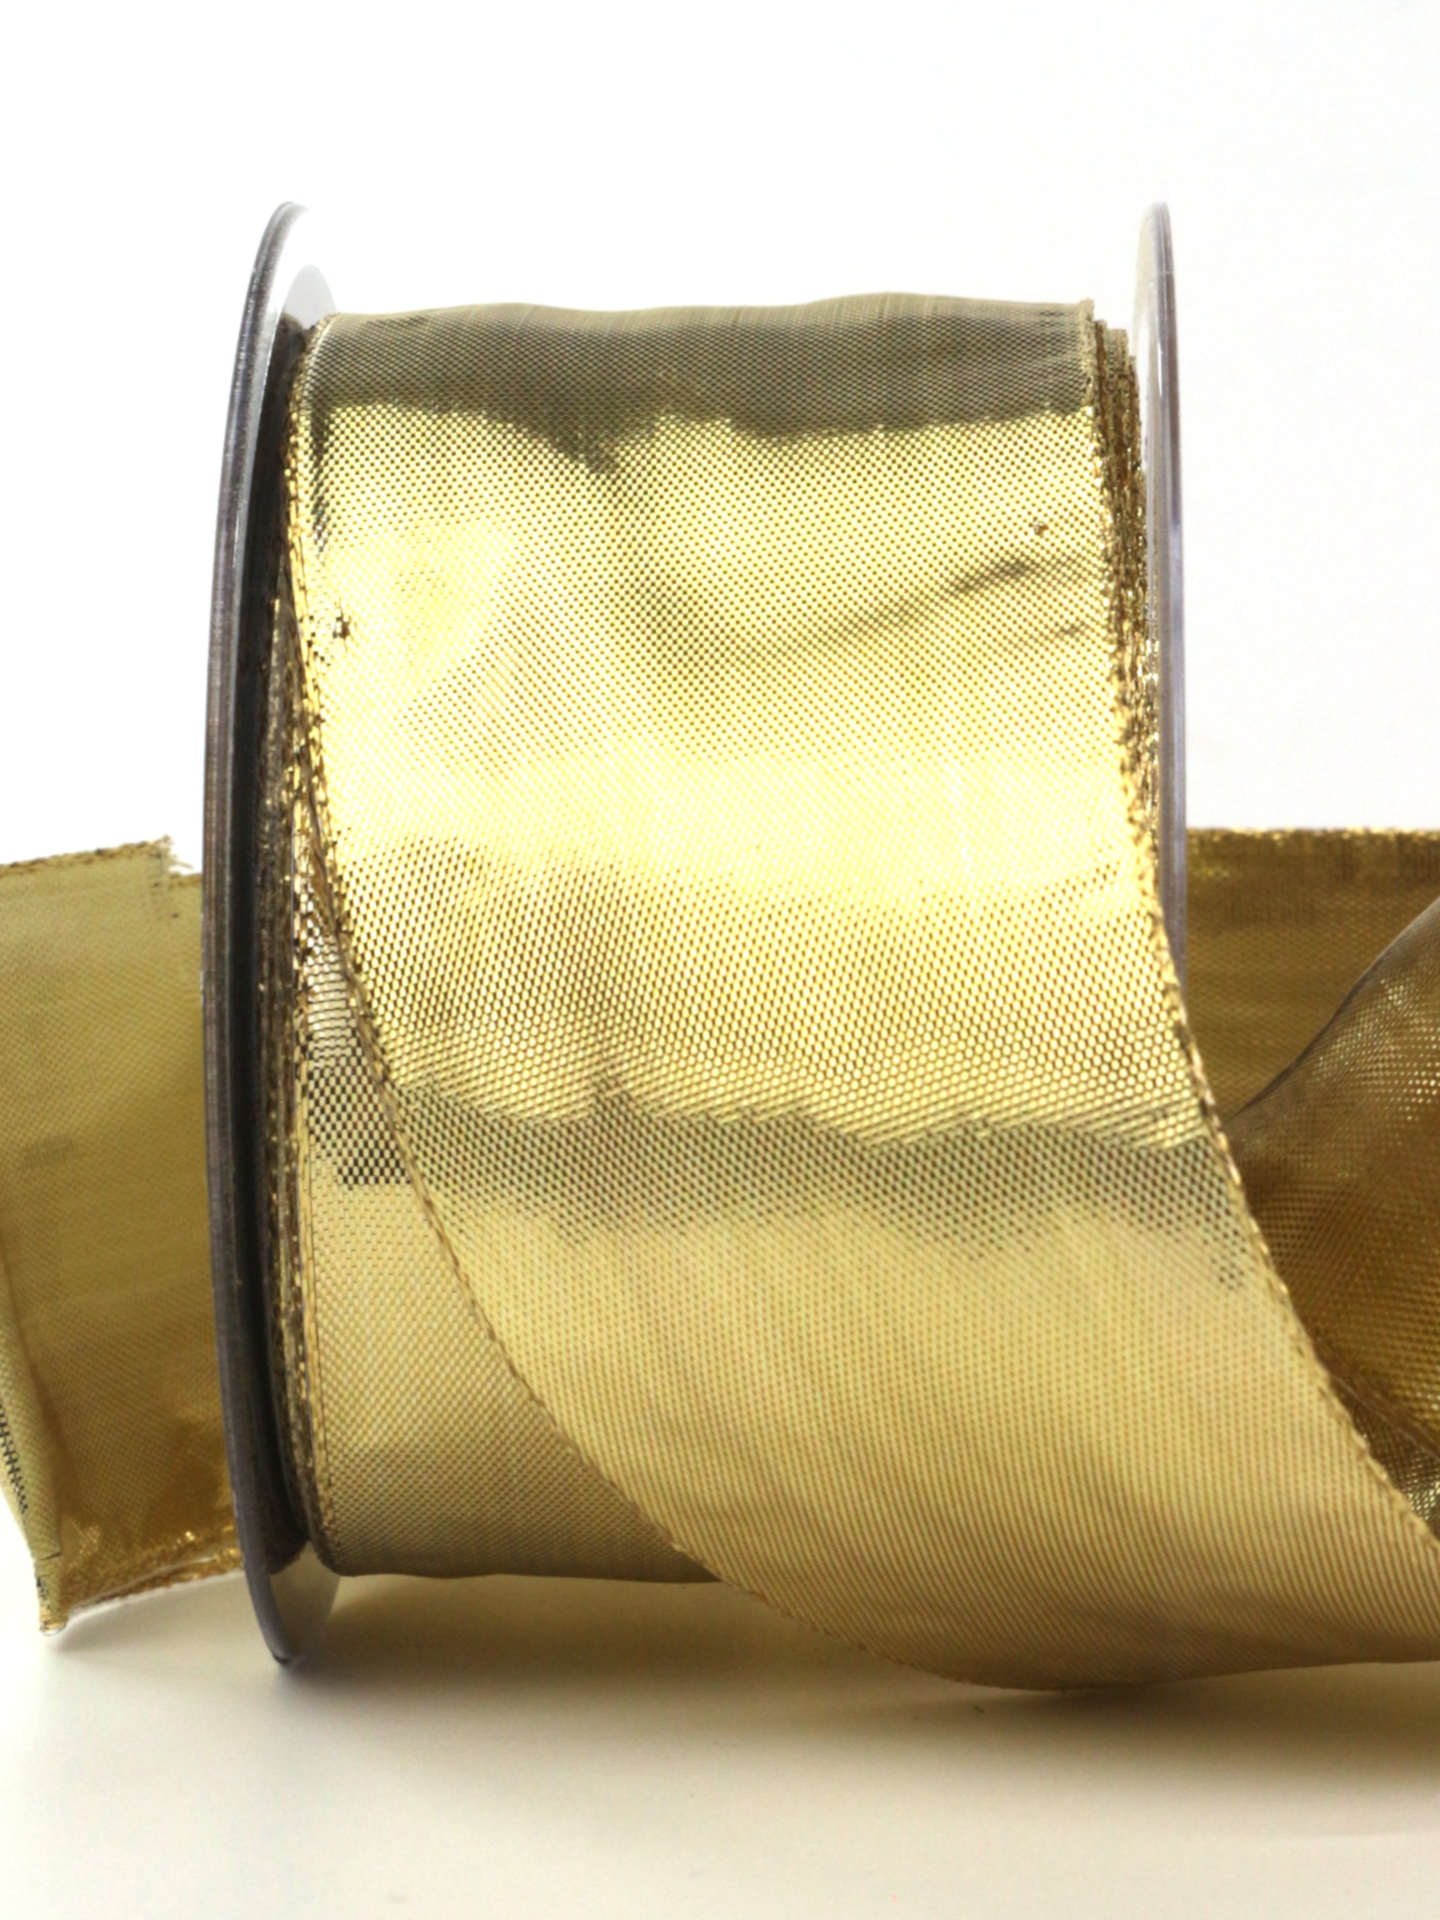 Lamé - Band gold, mit Drahtkante, gold, 60 mm breit, 25 m Rolle - geschenkband-weihnachten-dauersortiment, weihnachtsband, geschenkband-weihnachten, weihnachtsbaender